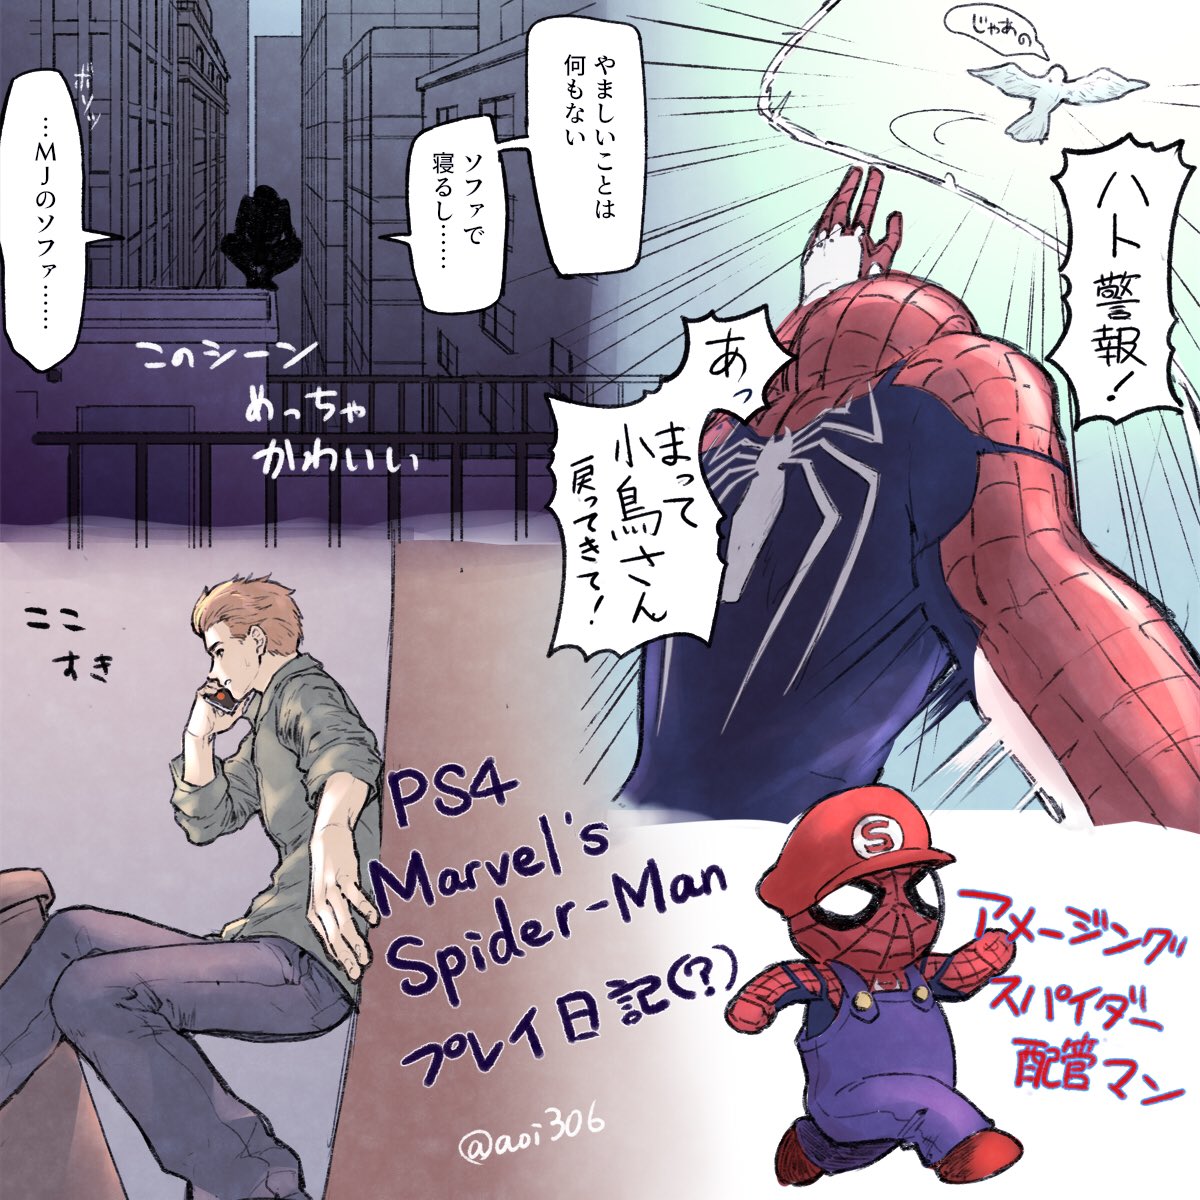 PS4スパイダーマン好きシーン 